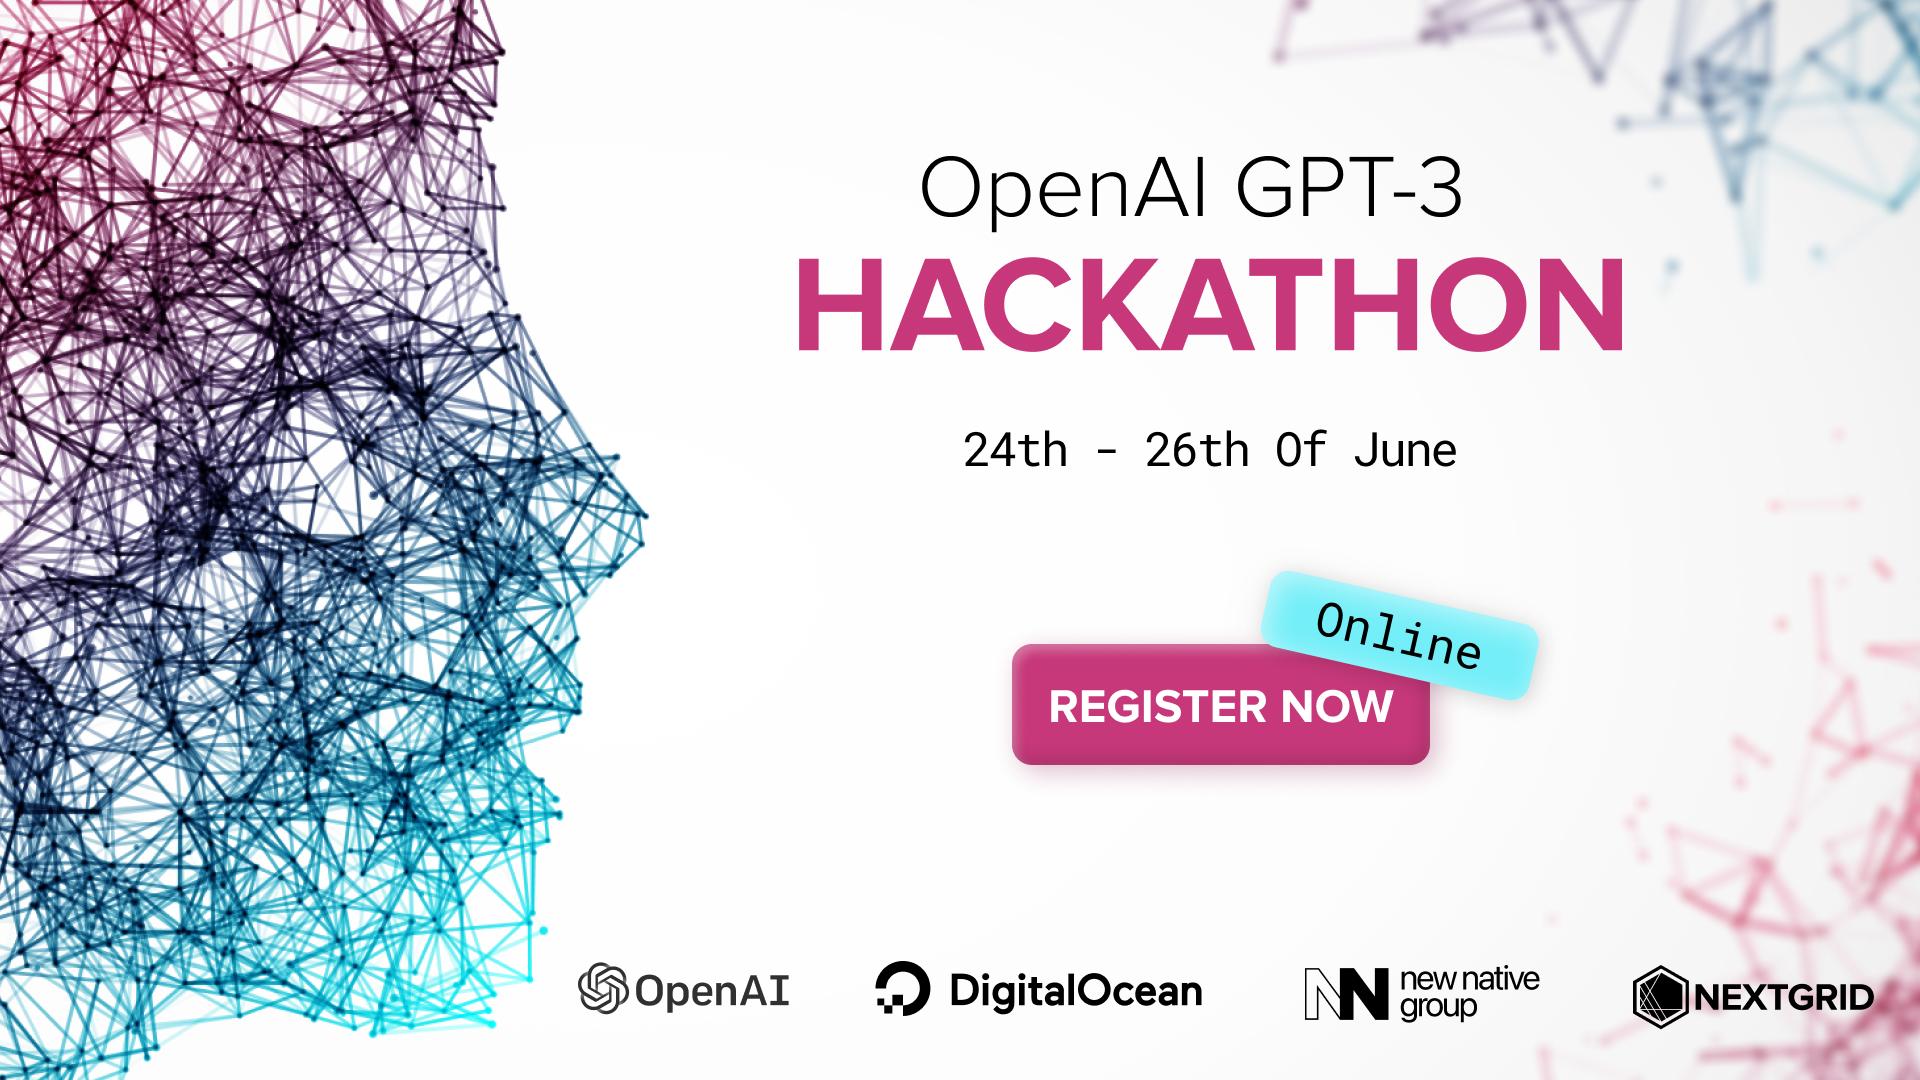 OpenAI GPT-3 Online Hackathon 2022 #1 image